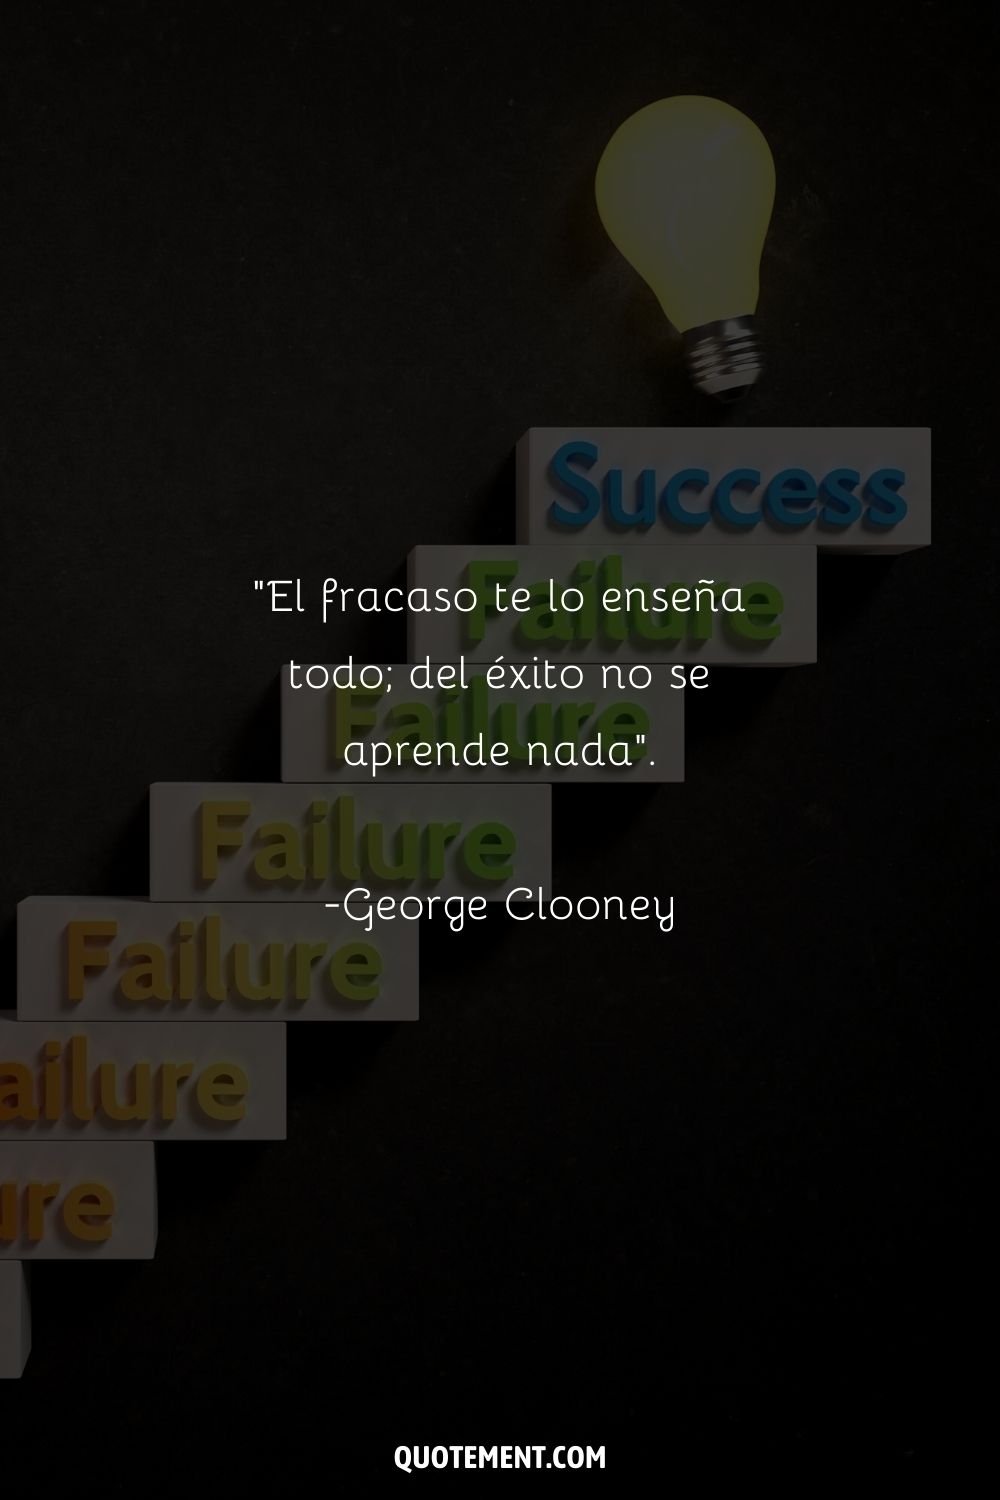 "El fracaso te lo enseña todo; del éxito no se aprende nada". - George Clooney